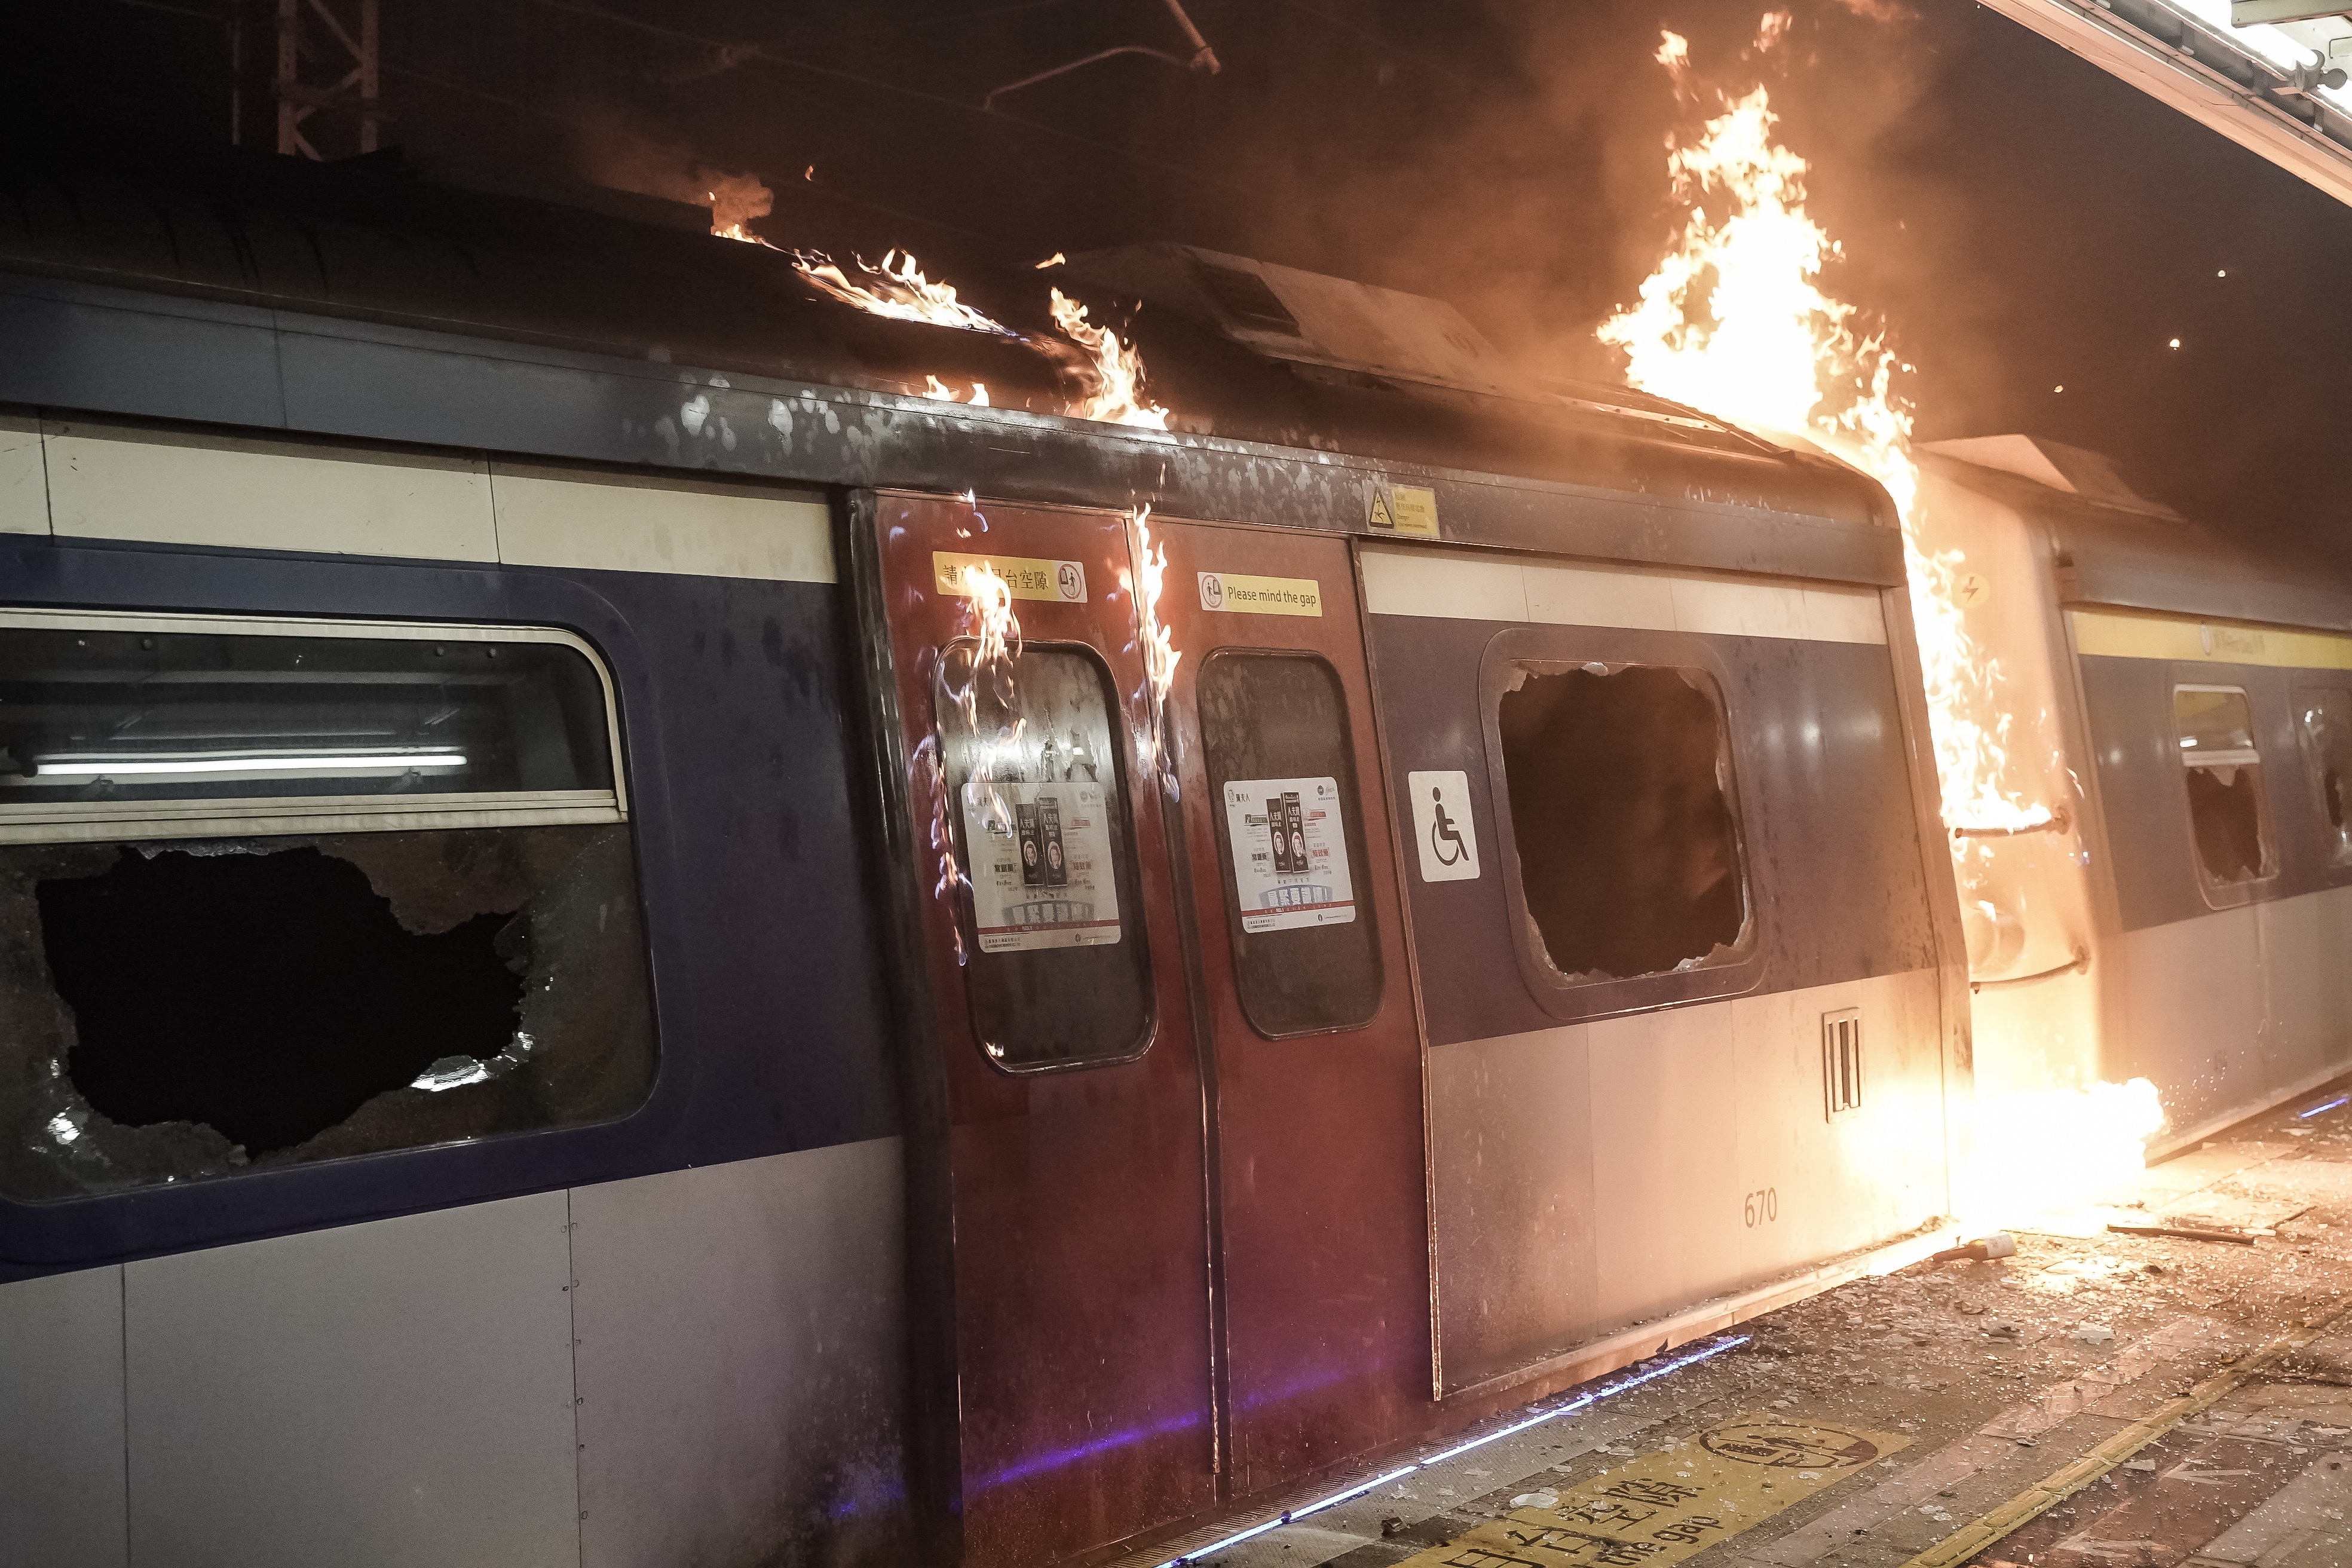 A train car burns at a MTR station during a demonstration at Chinese University of Hong Kong on November 13, 2019 in Hong Kong, China.